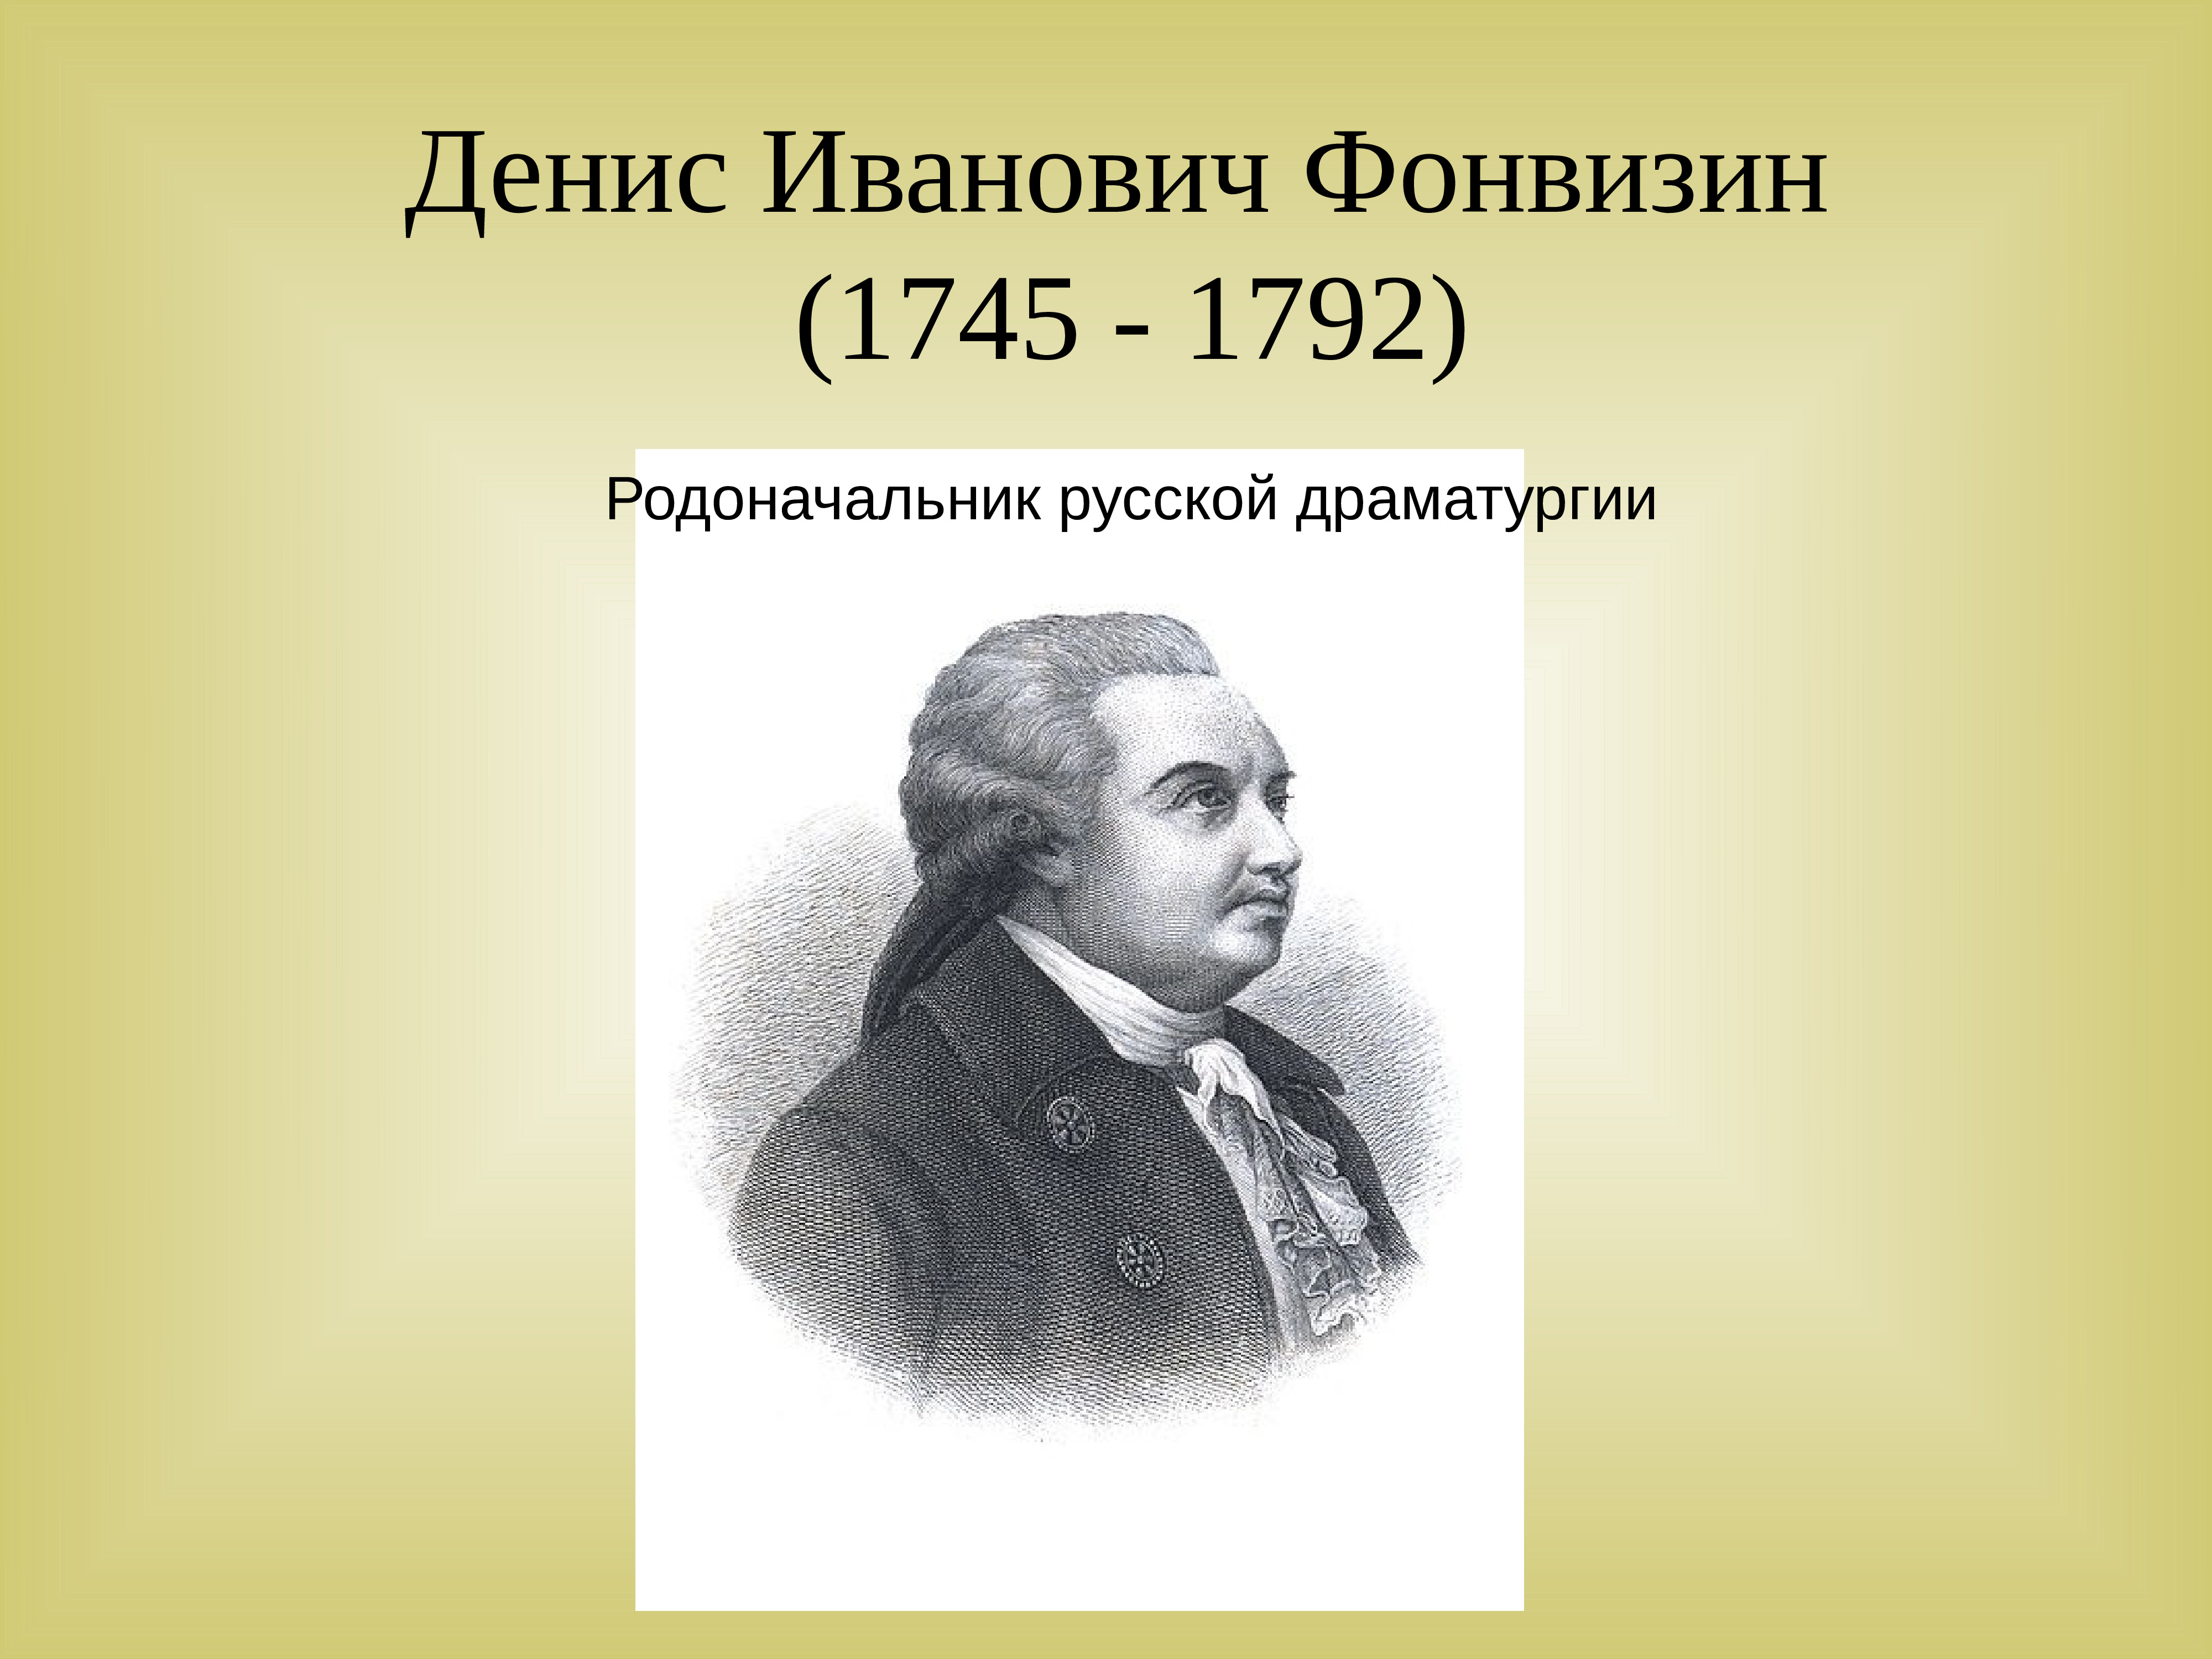 Родоначальник русской драматургии. Енис Иванович Фонвизин (1745-1792). Фонвизин 18 век.